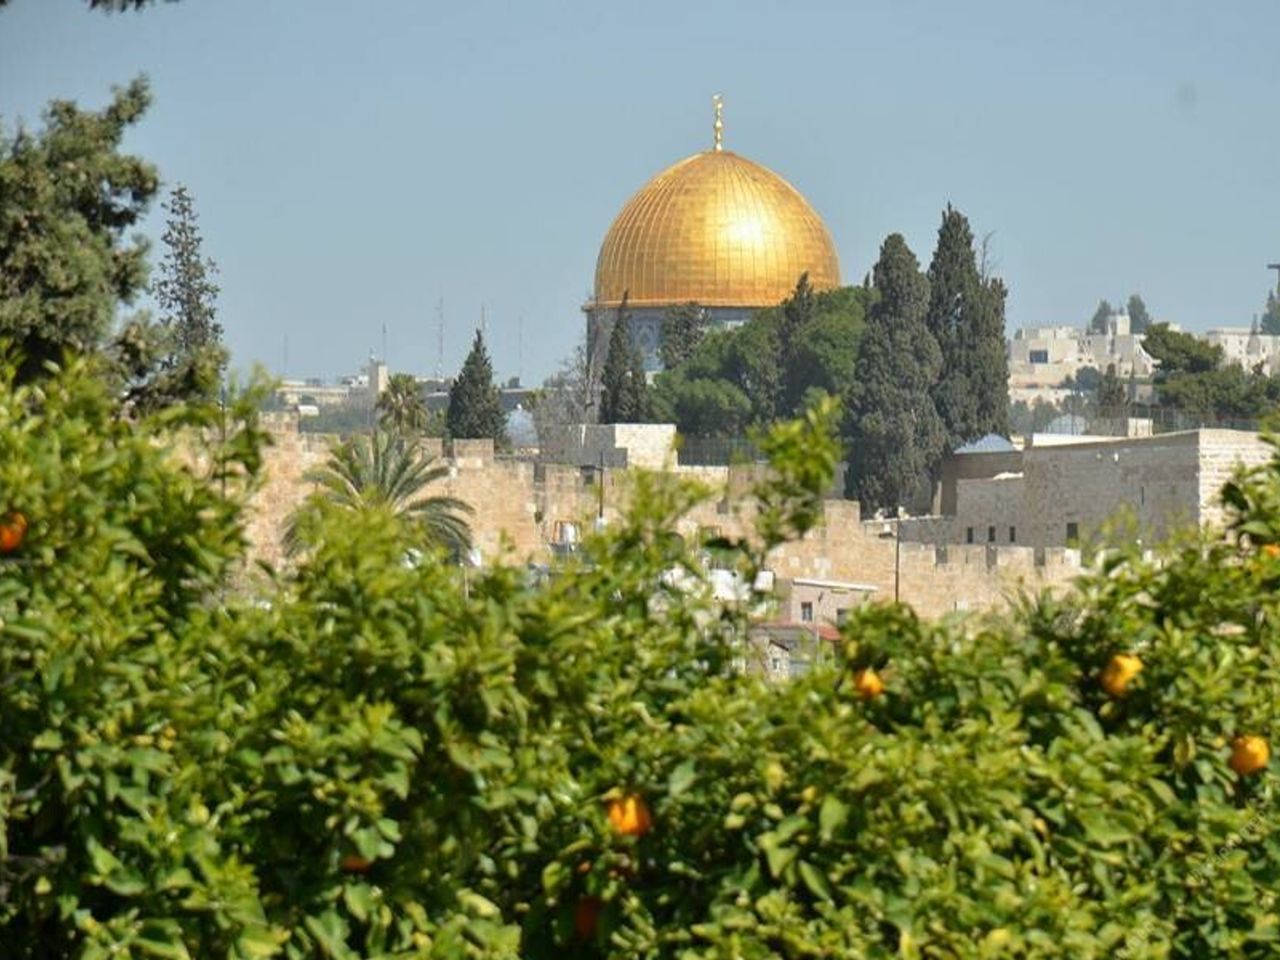 Тур-конструктор “Святой Иерусалим и Вифлеем” | Цена 400€, отзывы, описание экскурсии